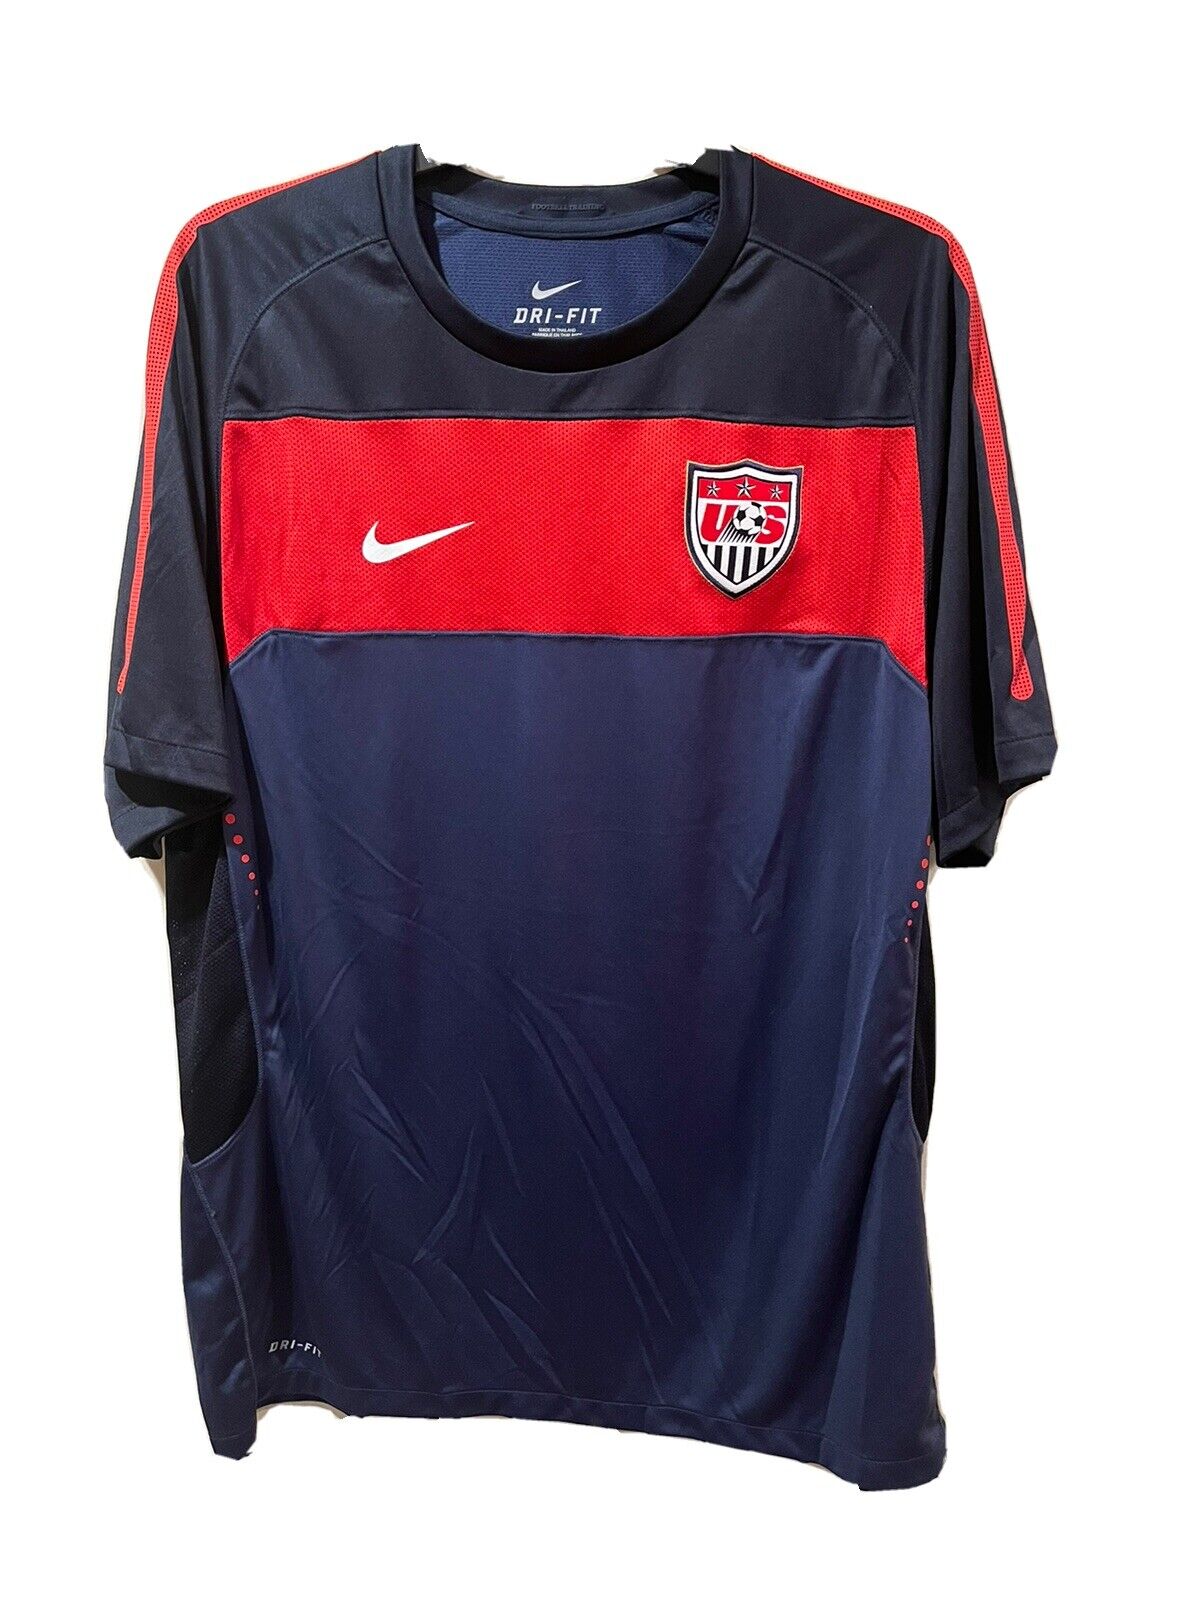 Nike USA USMNT Soccer Jersey 2010 Work Size Large | eBay